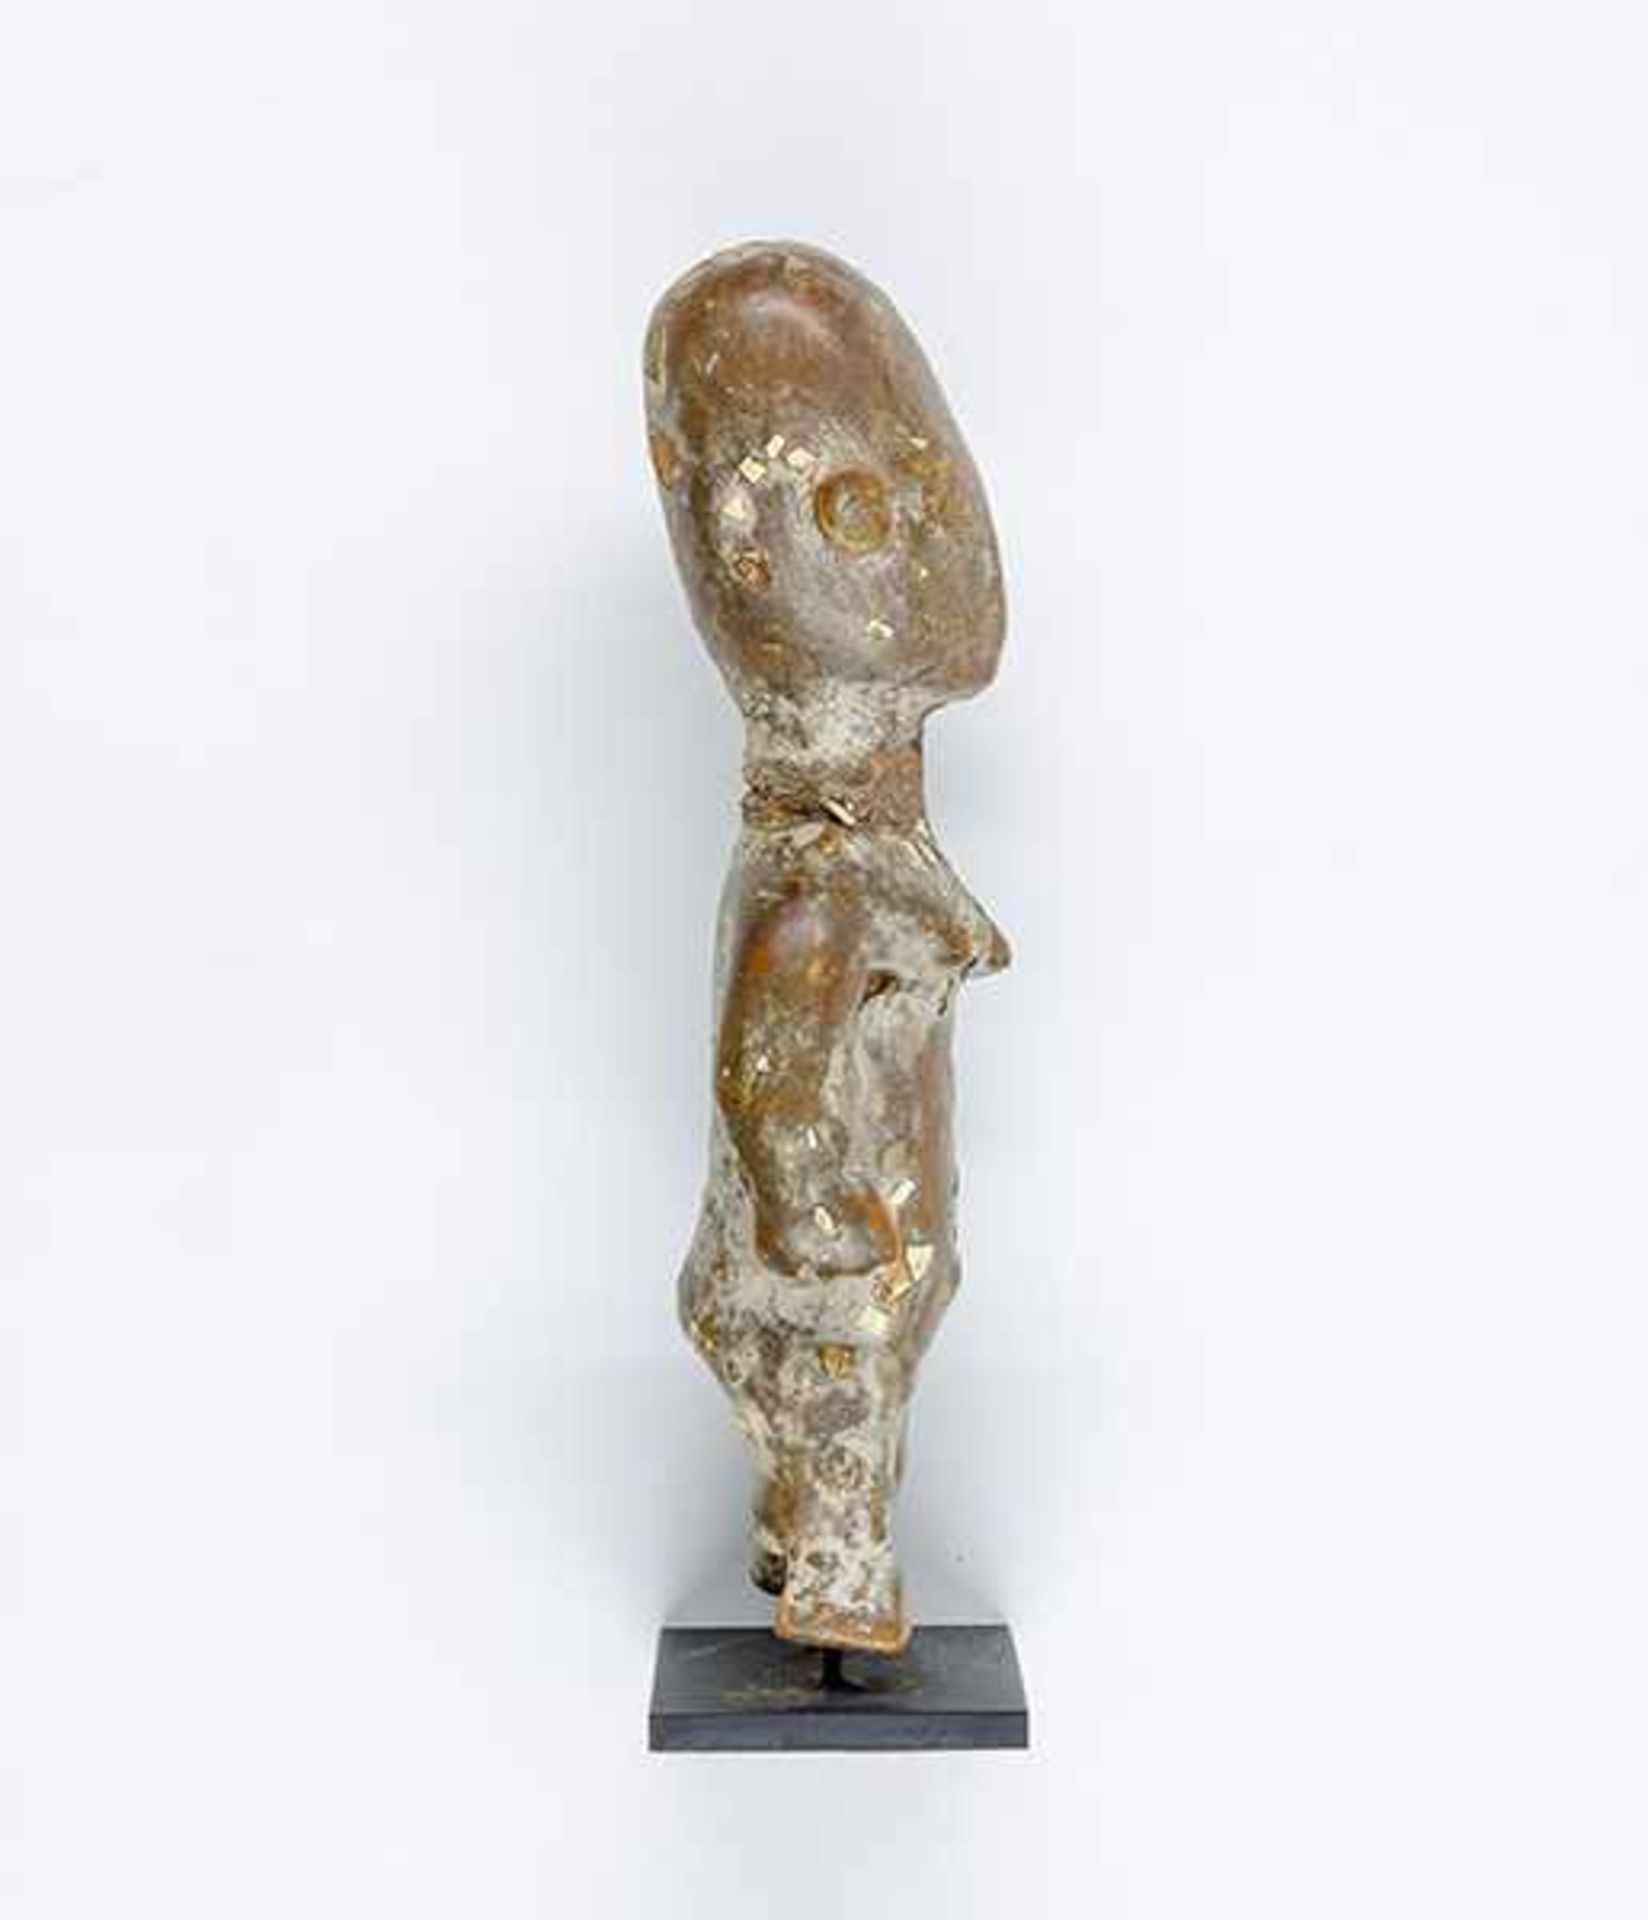 Afrikana - - Opferfigur, Ghana. Holz, gekalkt, Opferpatina mit Eierschalen. Größe: 17,5 x 7 cm. - Bild 3 aus 5